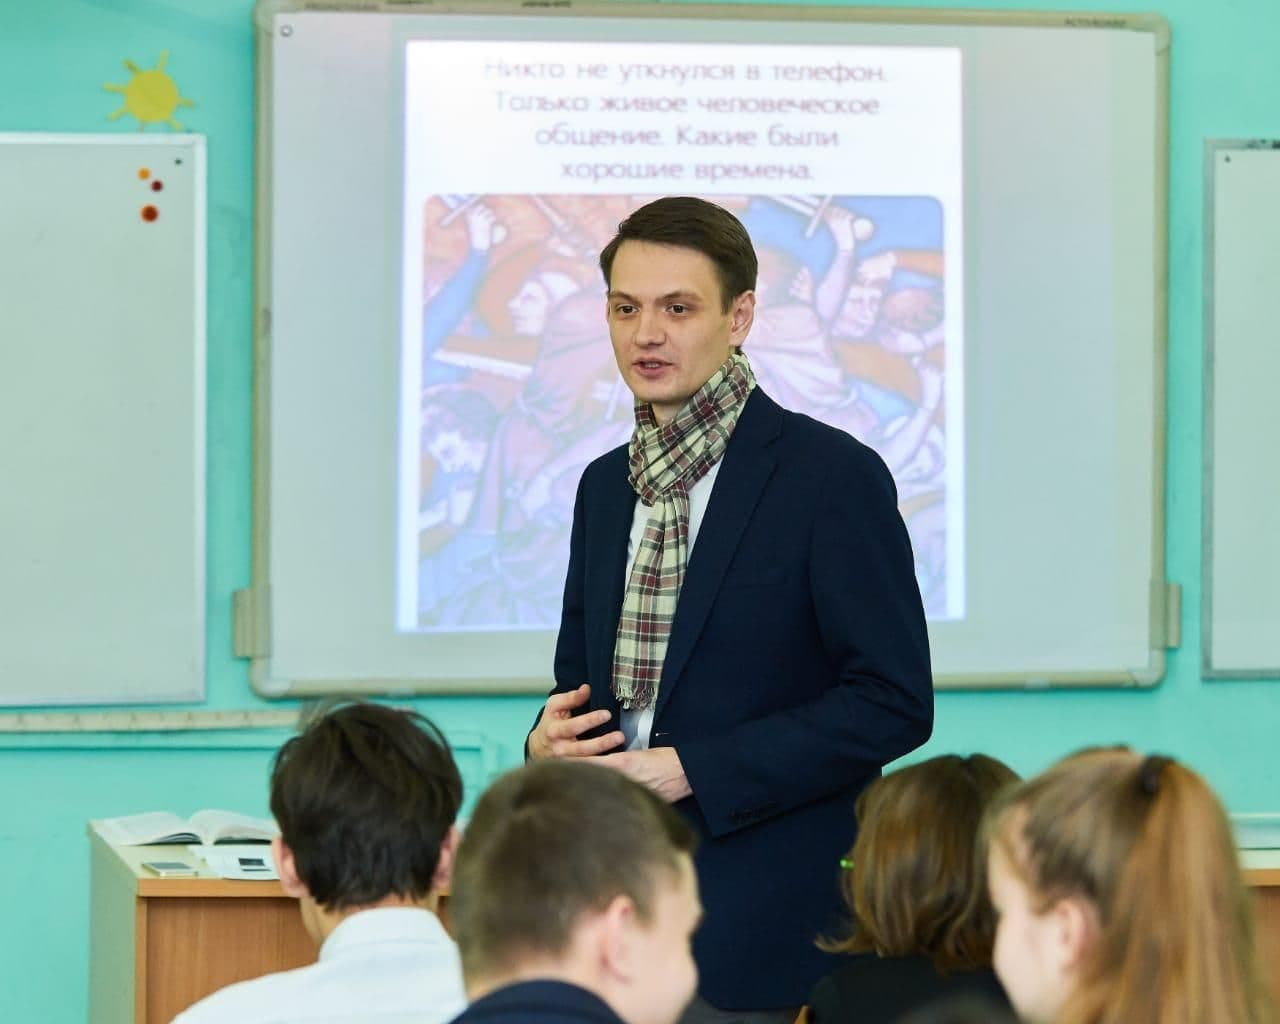 Учитель истории и обществознания Муринского центра образования №2 Максим Бойко